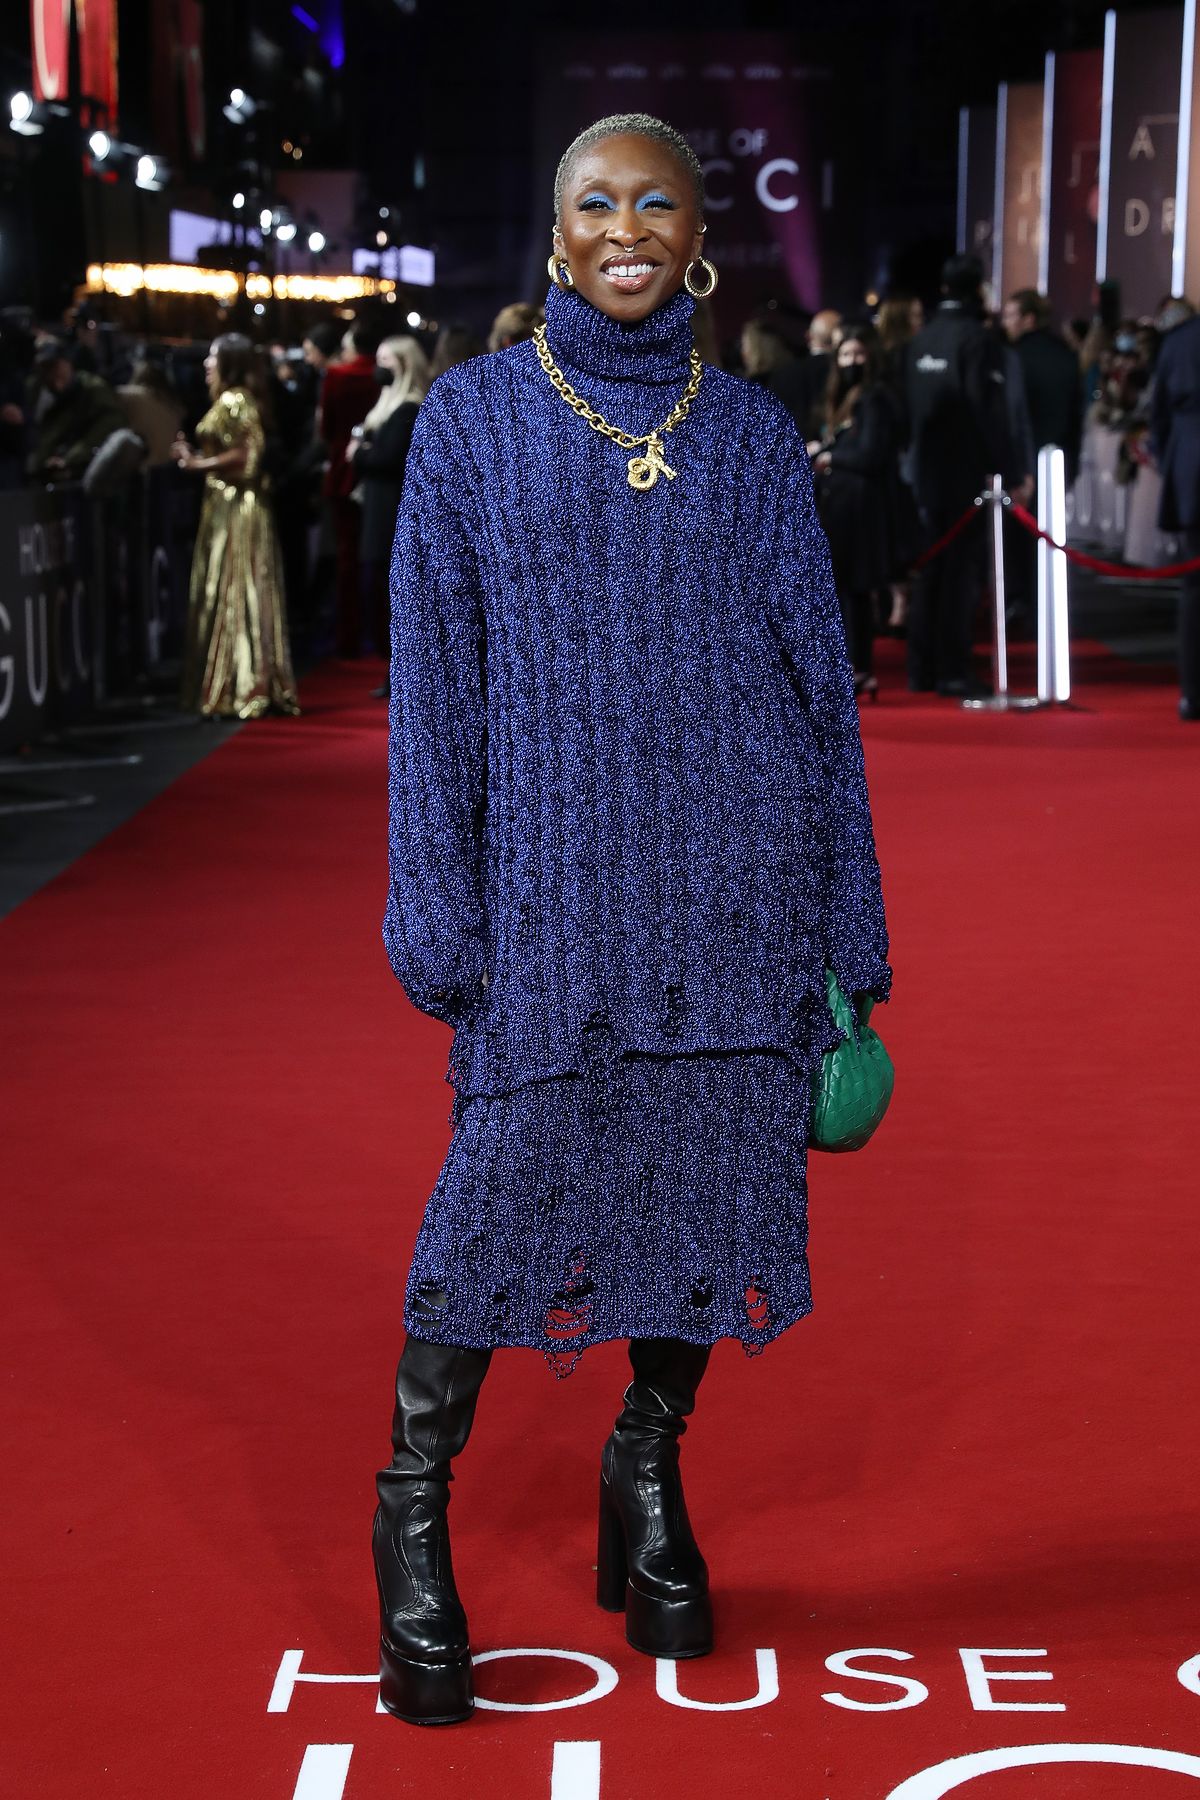 Синтия Эриво в платье Balenciaga, сапогах Casadei, в ожерелье Schiaparelli на премьере фильма «Дом Gucci» в Лондоне, фото 1